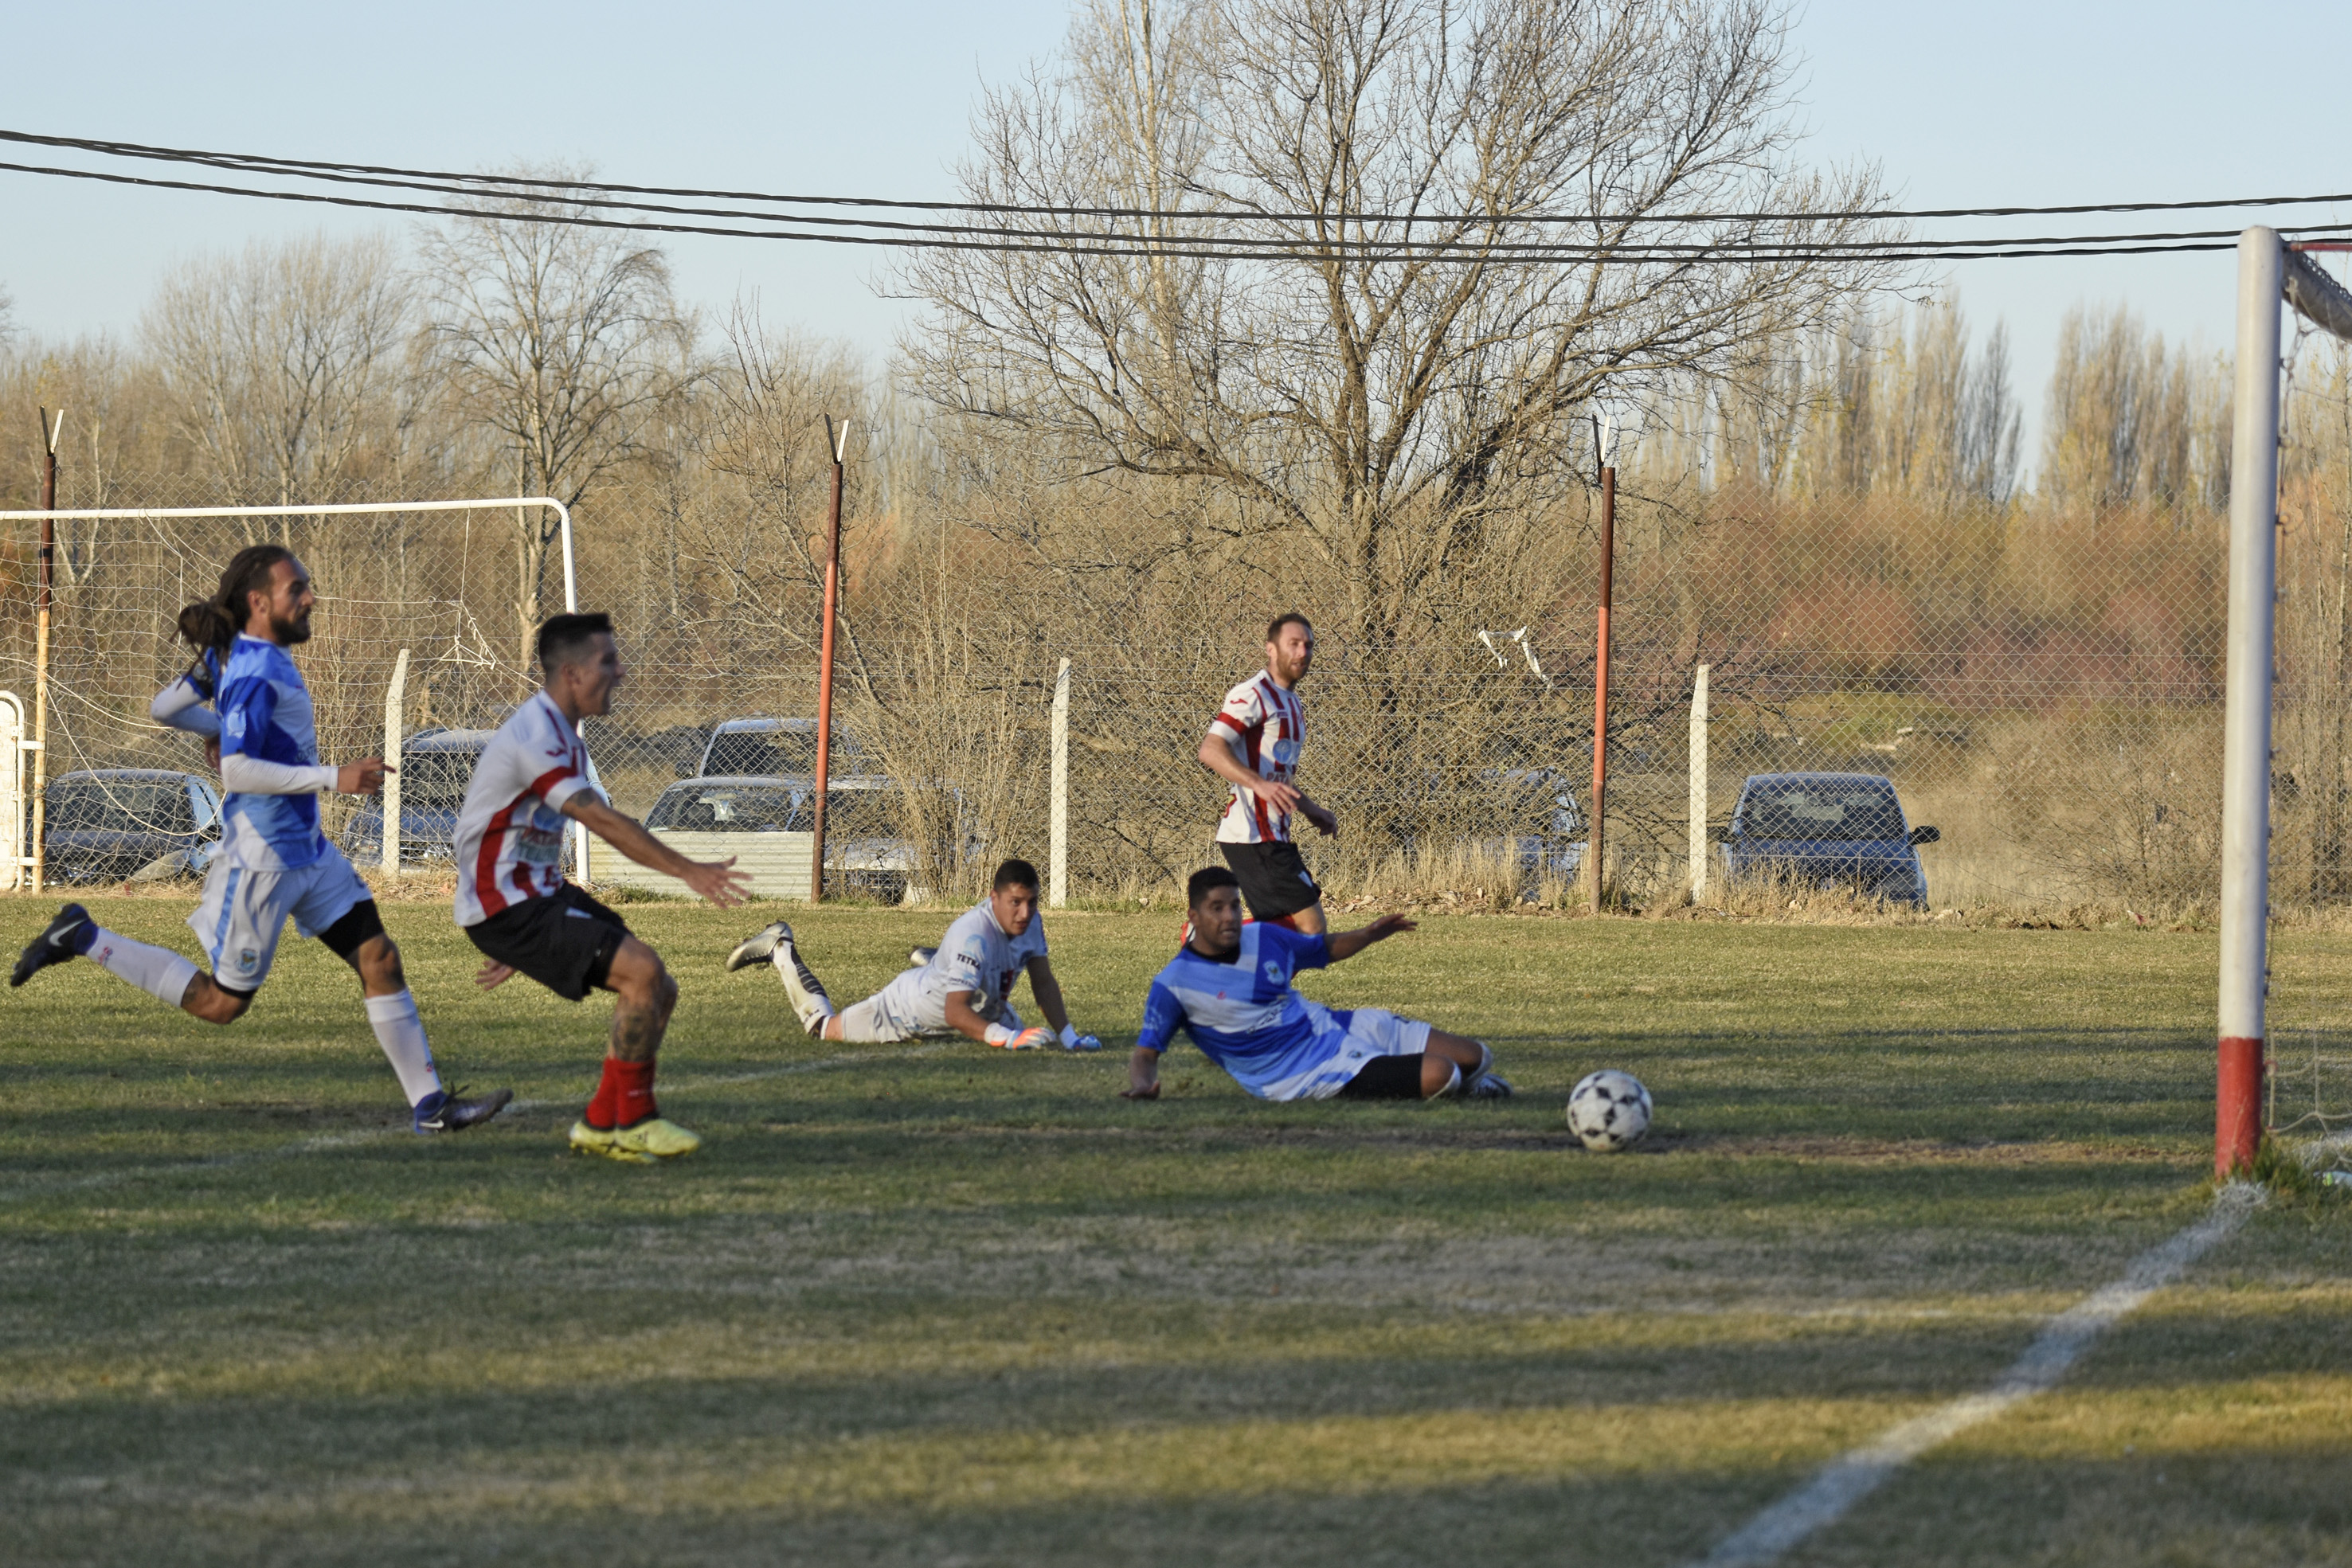 Dómini falló un gol increíble cuando iban 1 a 1. (Foto: Juan Thomes)